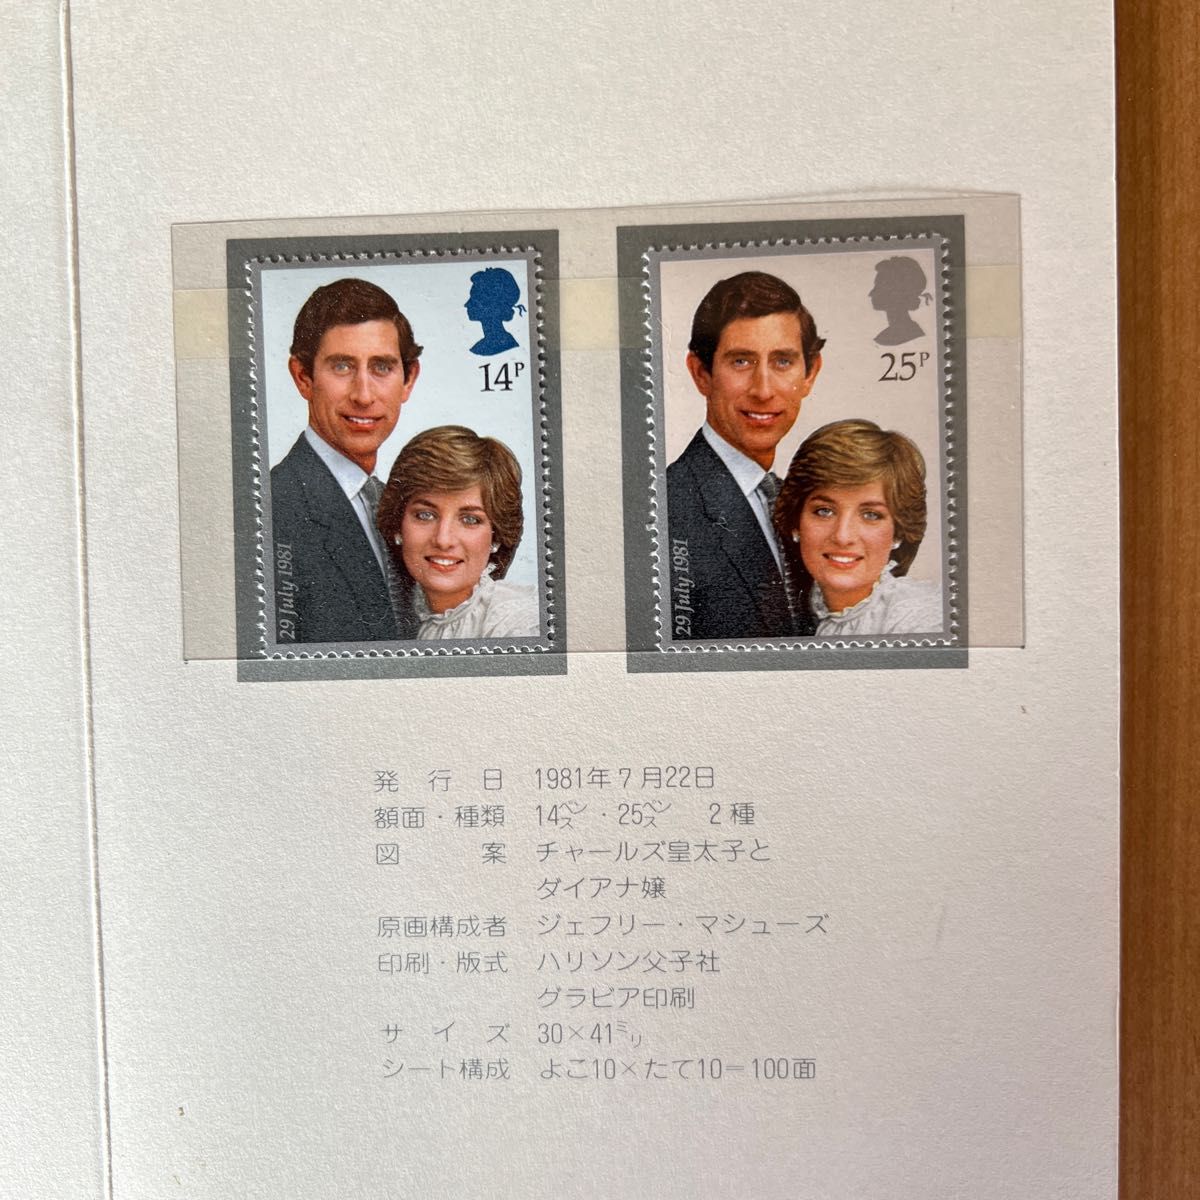 英国王室 チャールズ皇太子 ダイアナ妃  御成婚記念切手 未使用